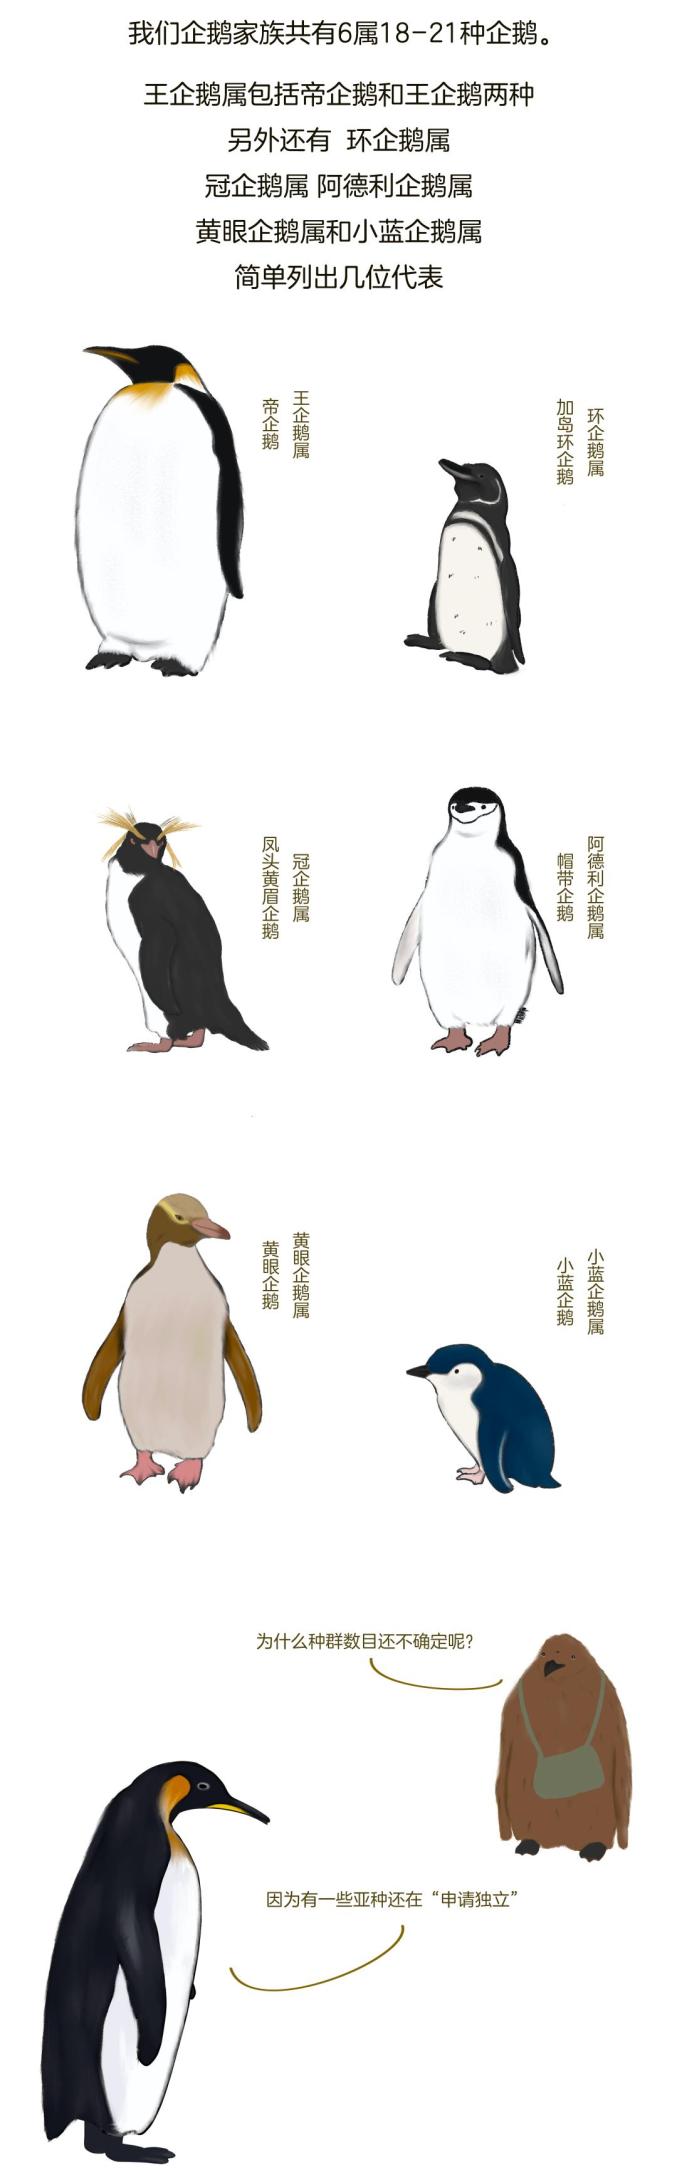 企鹅的身体结构图介绍图片